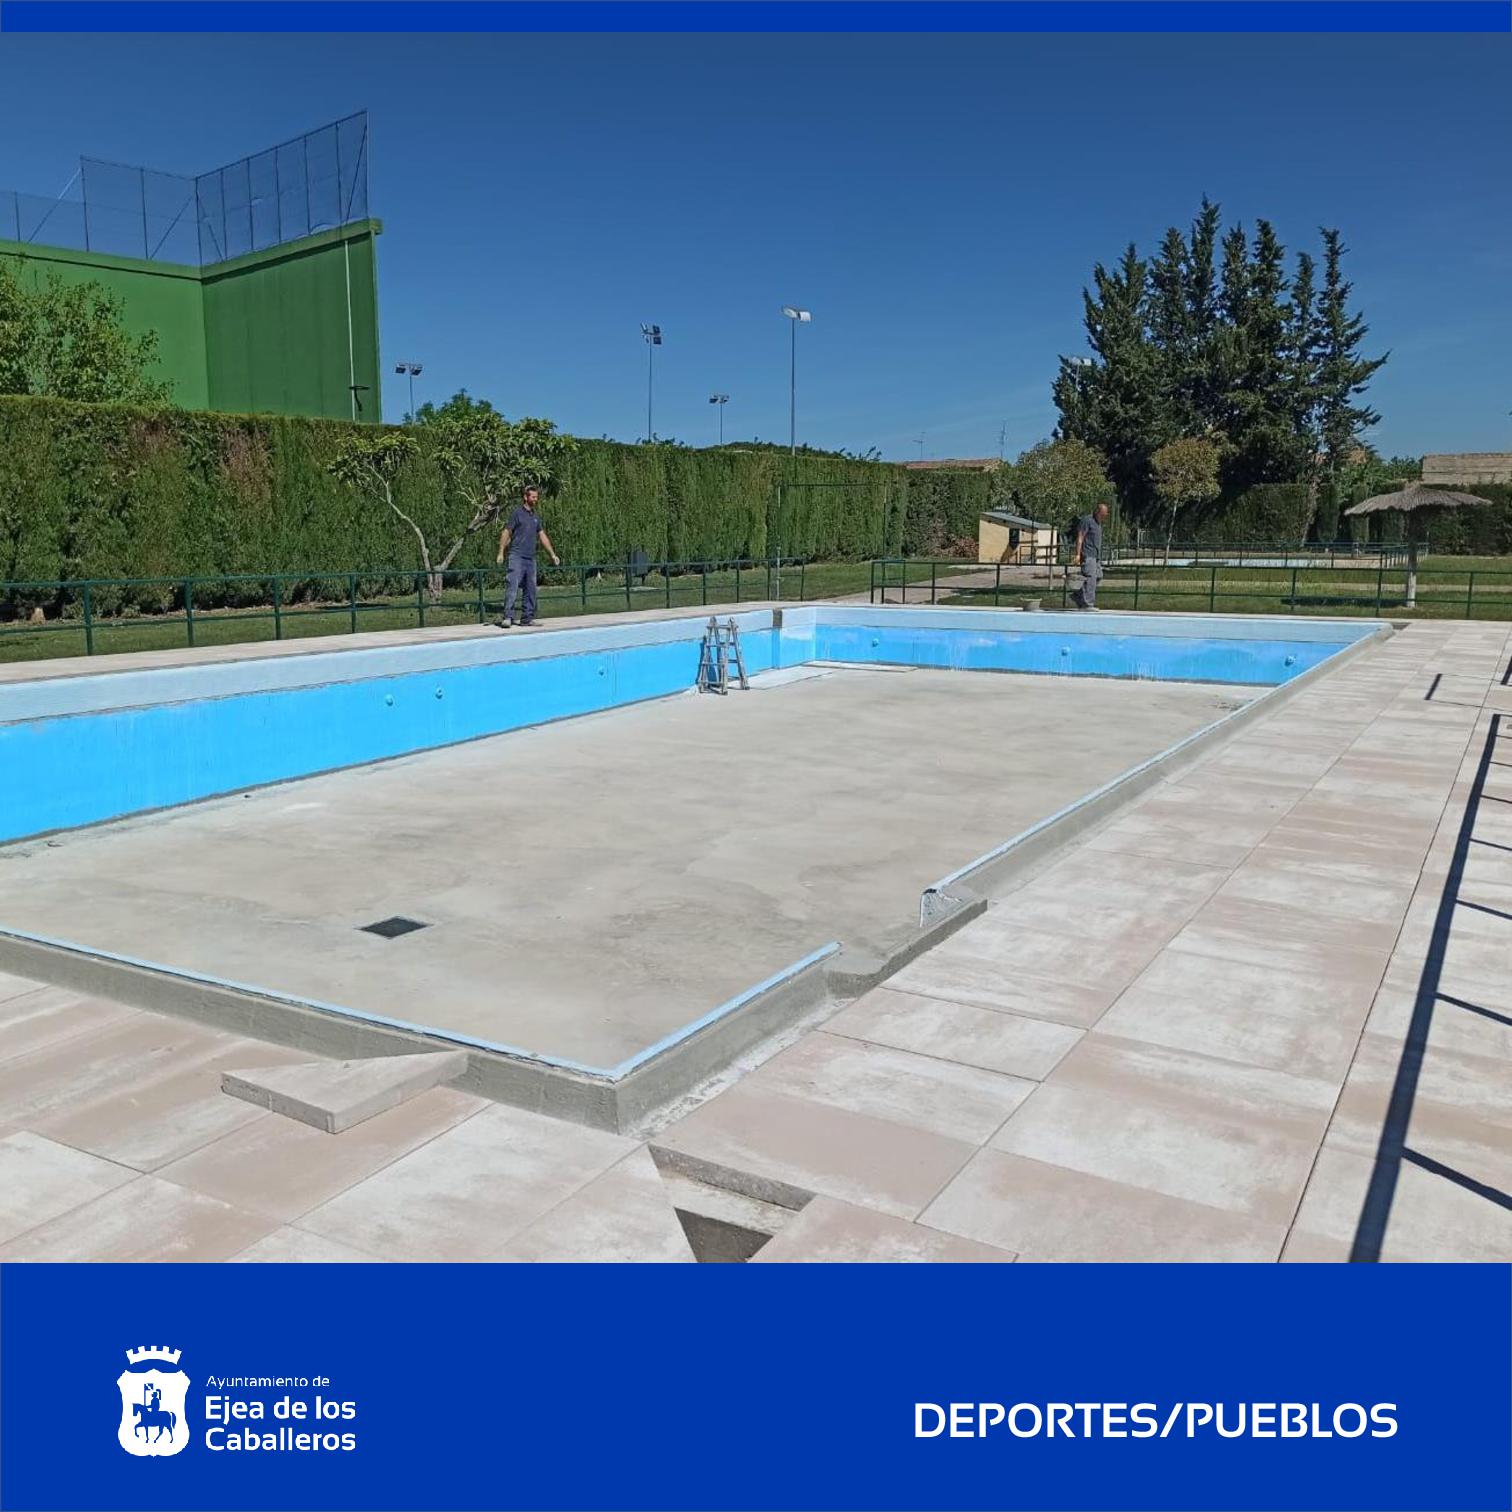 En este momento estás viendo Avanzan los trabajos de reformas en varias piscinas municipales de los Pueblos de Ejea